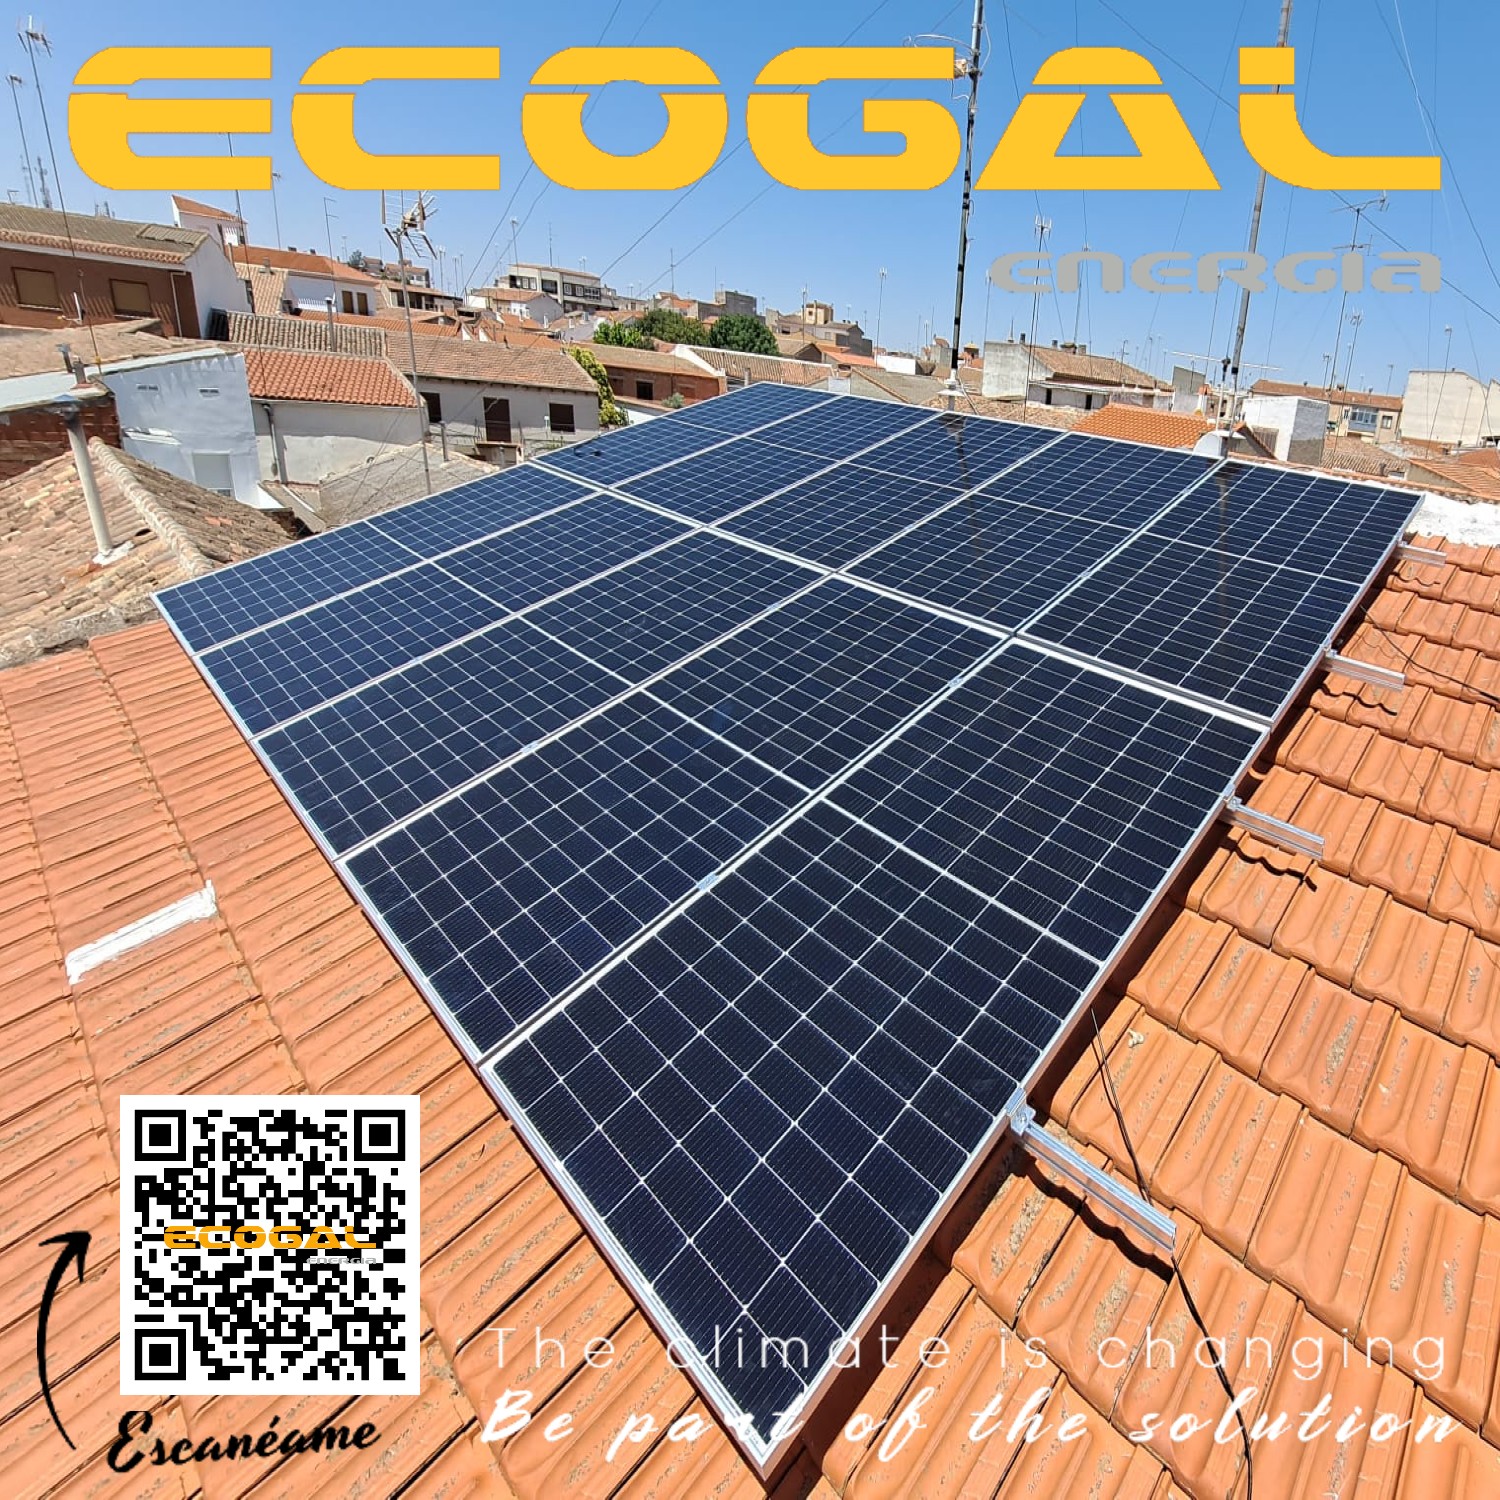 Instalación Solar de 5 Kwp realizada en Villarrobledo (AB)